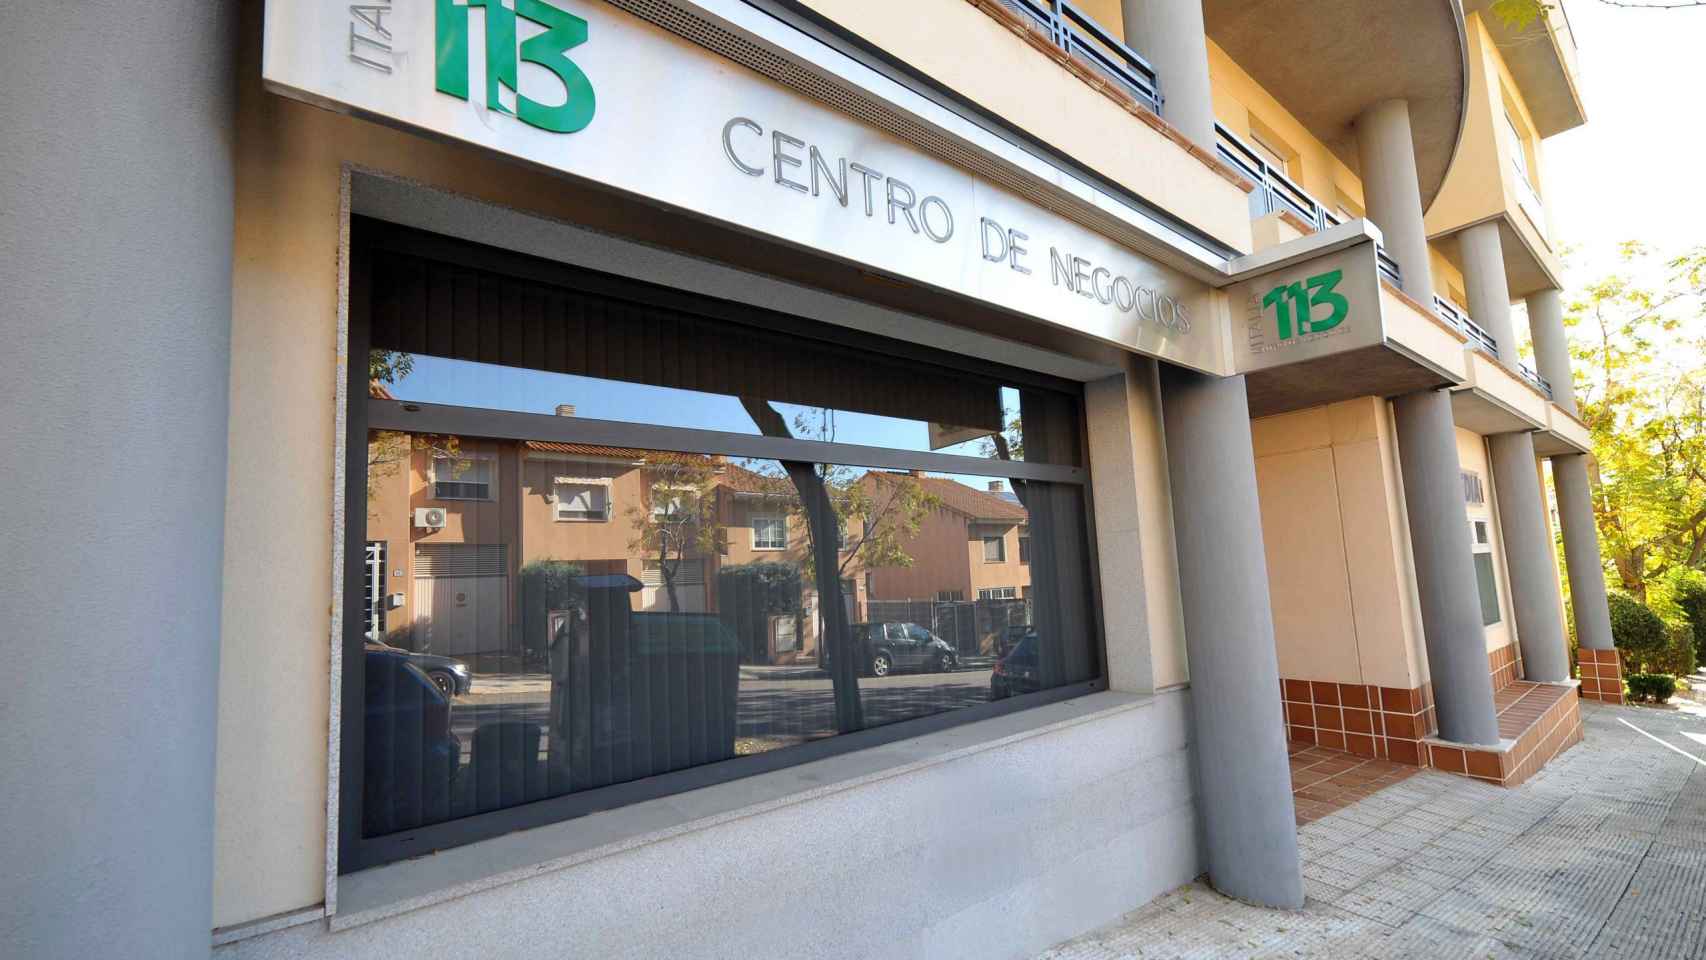 Centro de Negocios Italia 113.